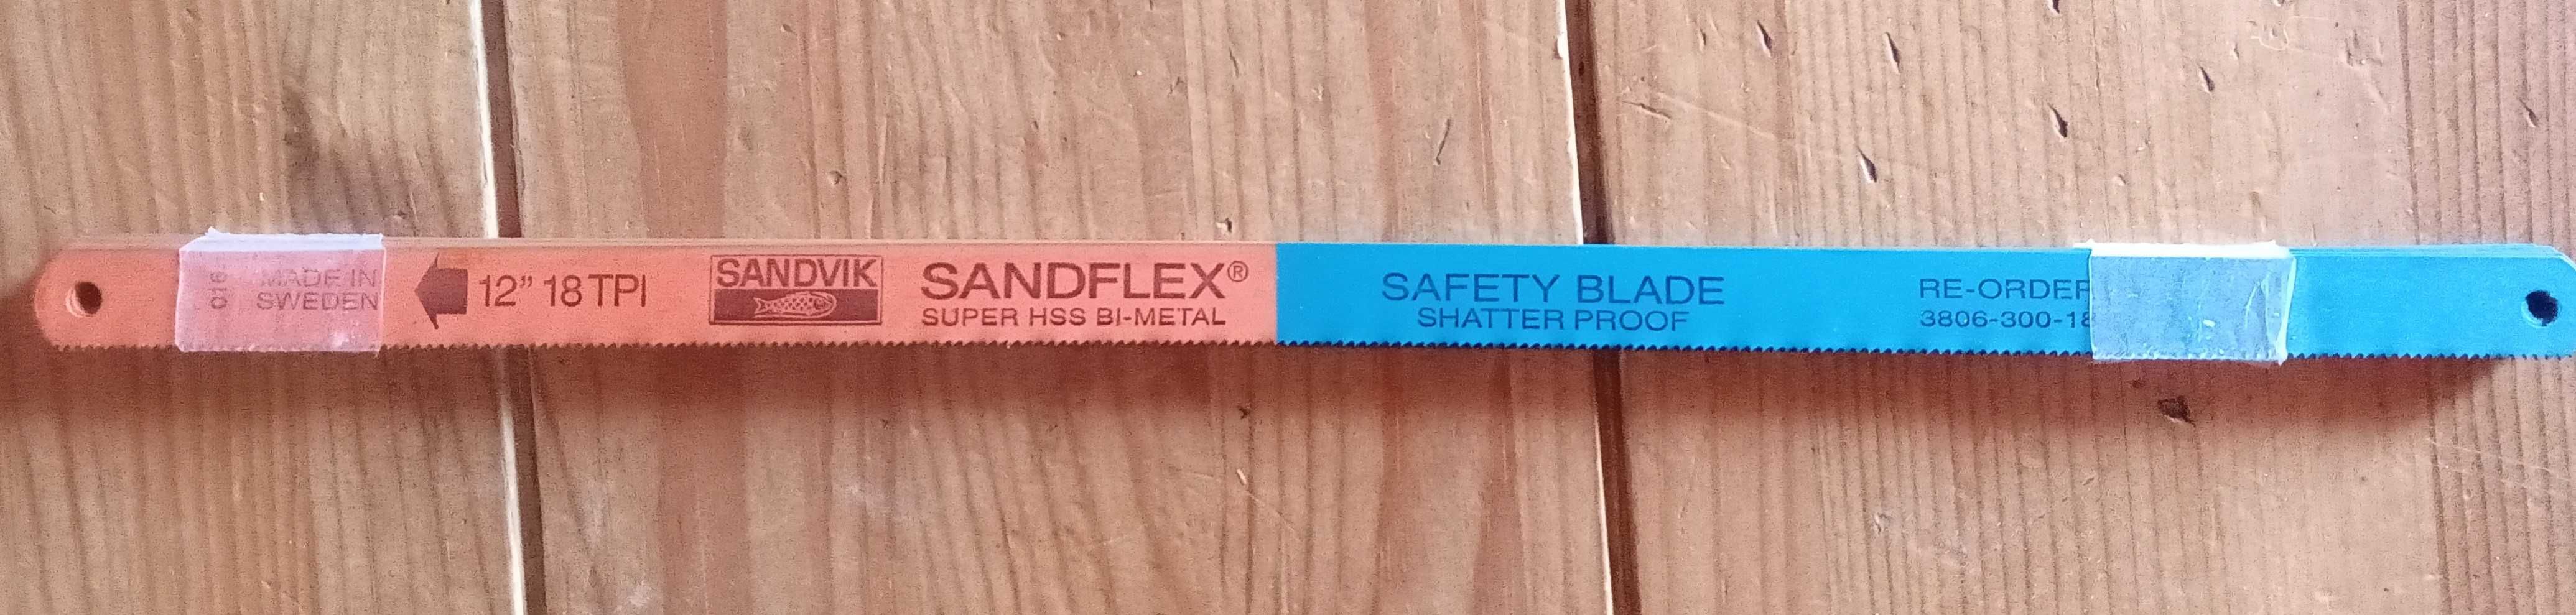 Brzeszczoty bimetaliczne Sandflex do piły ręcznej 300mm